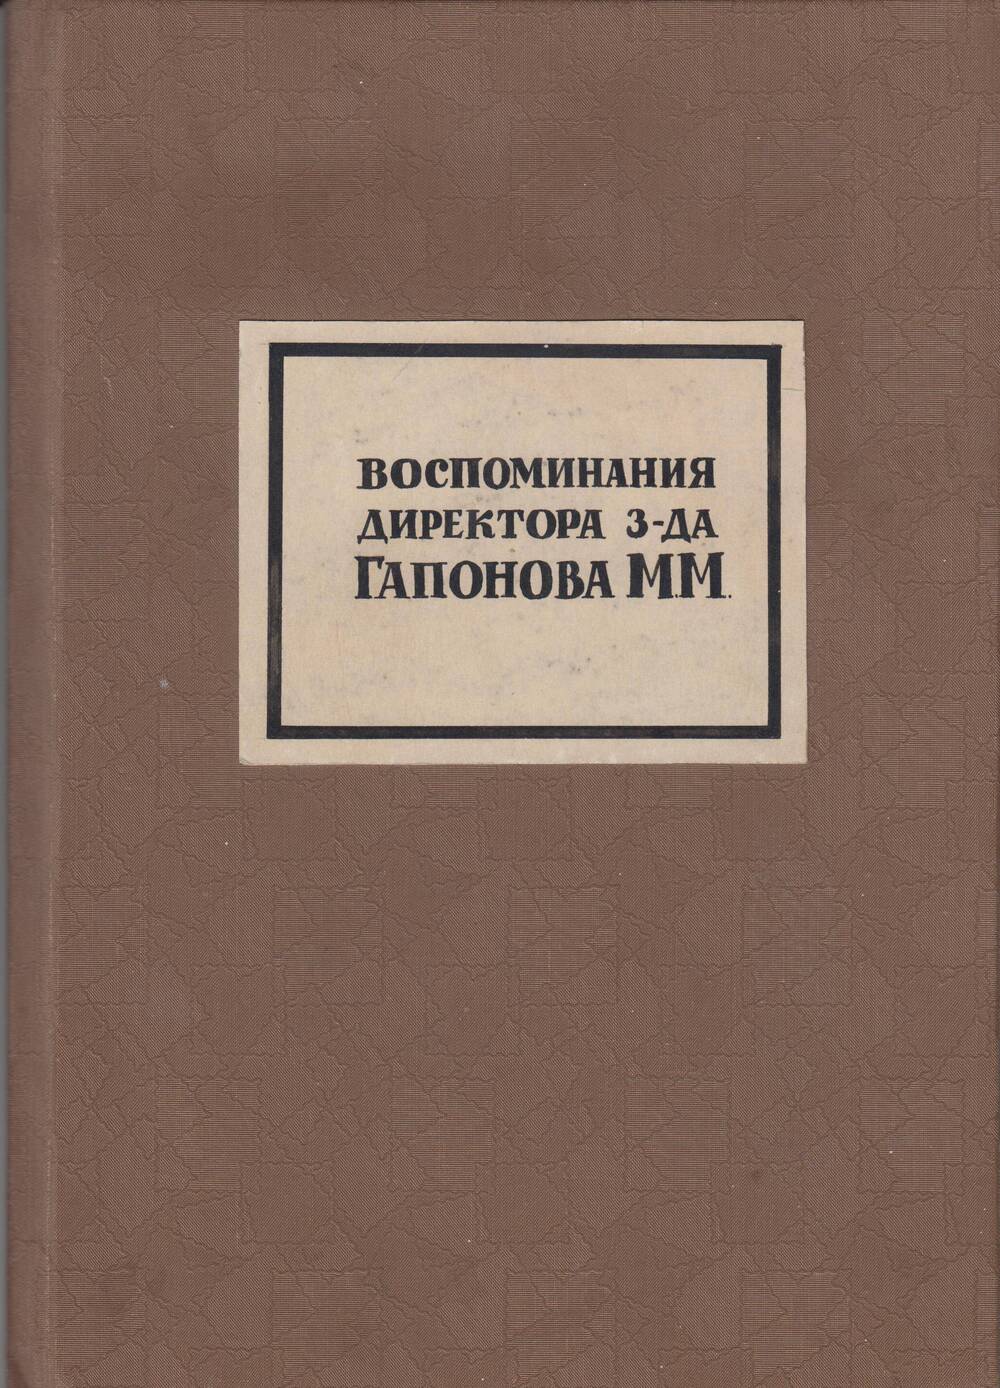 Воспоминания бывшего директора Людиновского завода Гапонова М.М.
( апрель 1923 - август 1926 г.г.)